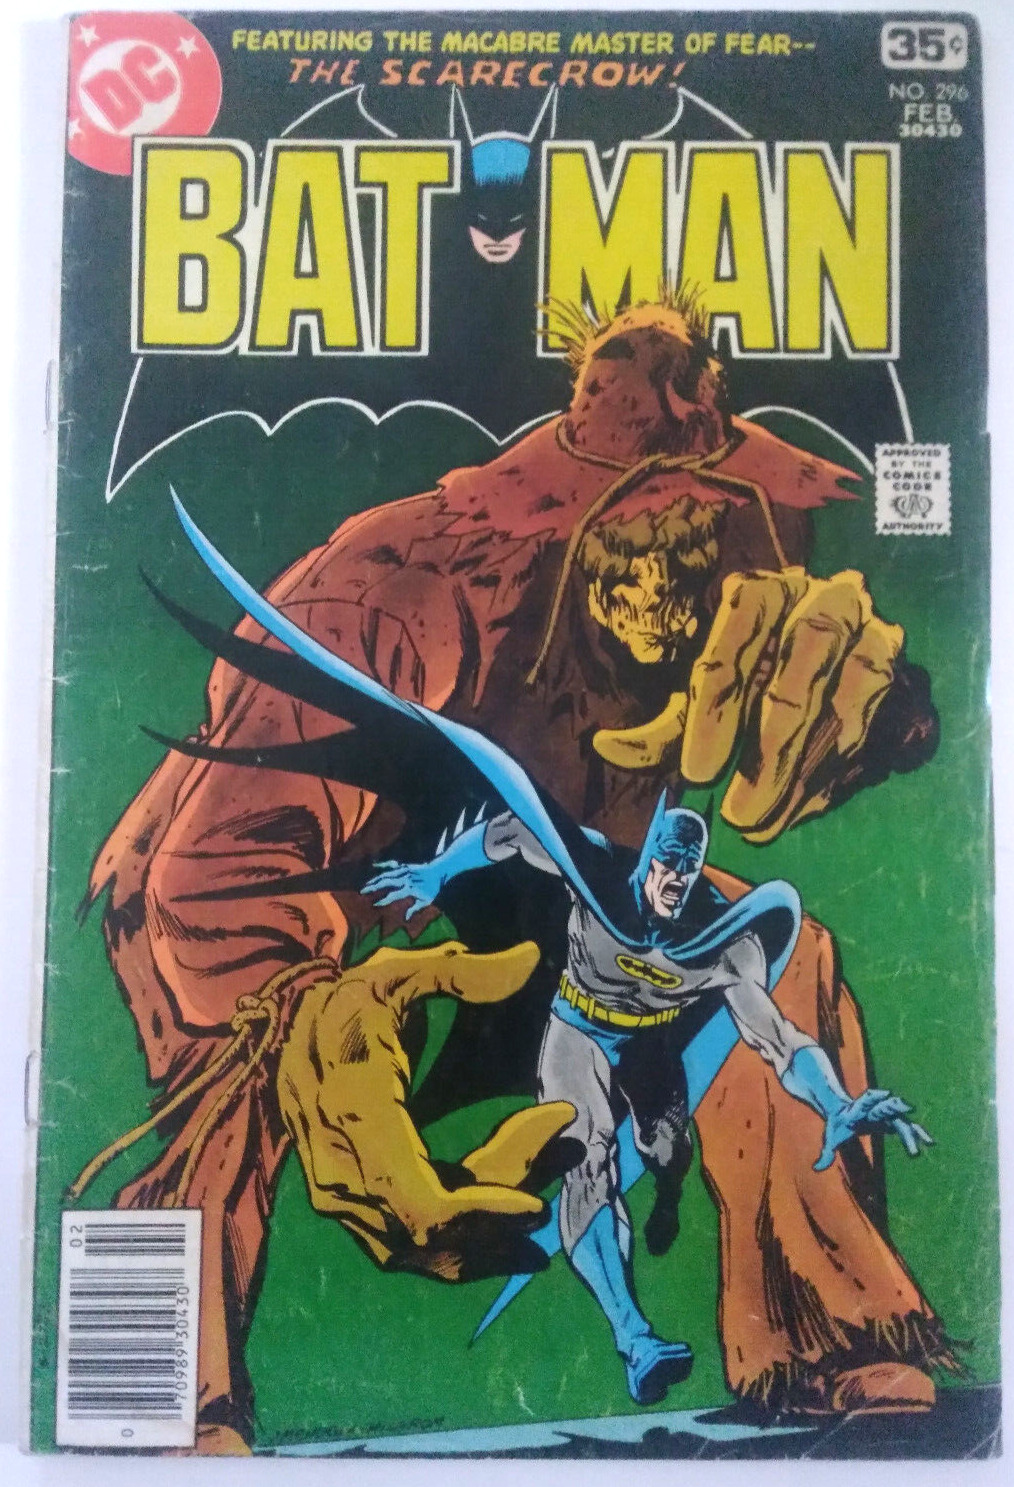 Batman # 296 DC Comics Feb. 1978 The Scarecrow Good Reader